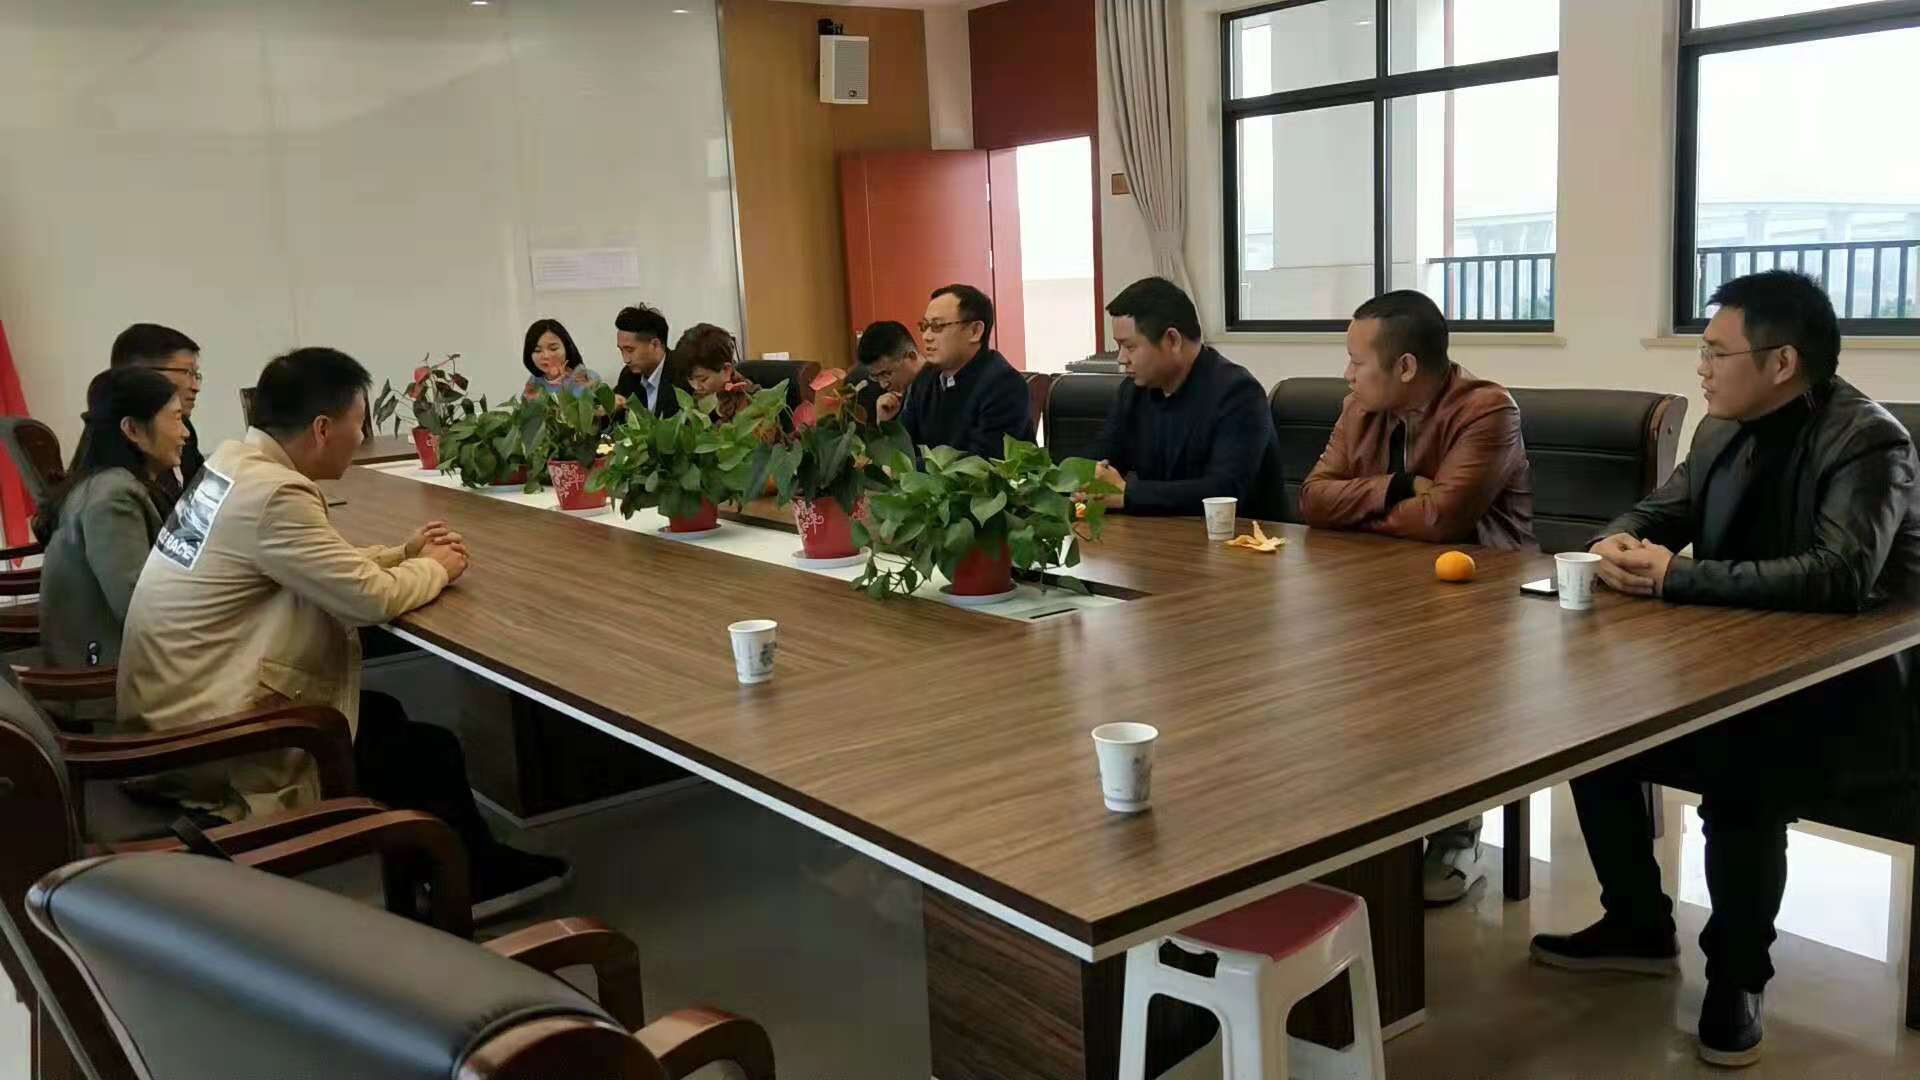 余杭湖南商会2018年第十一次会员互访活动